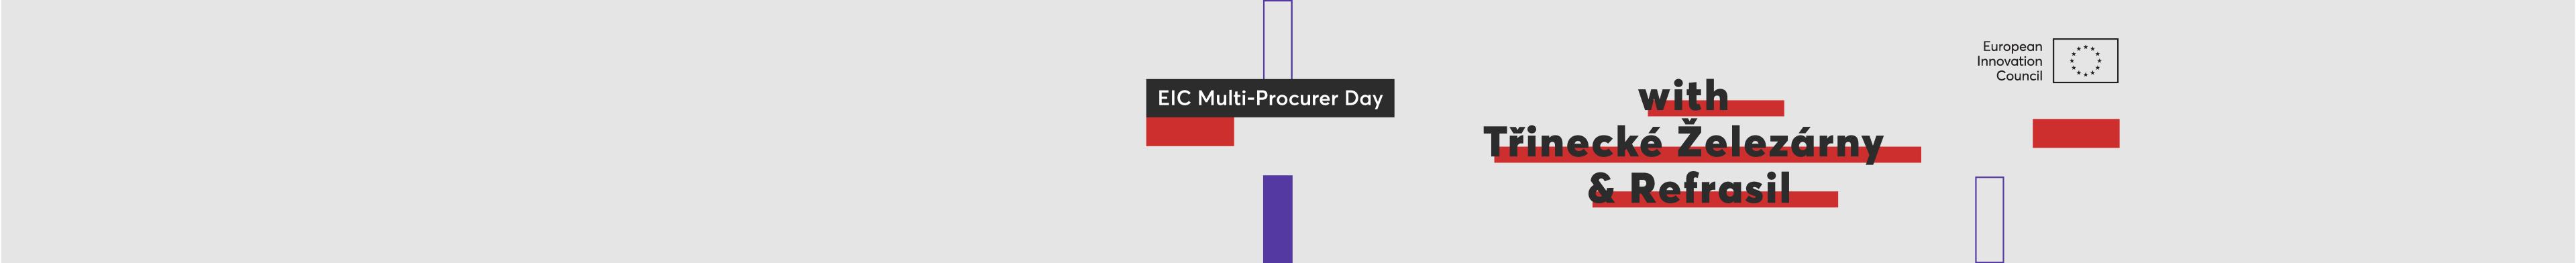 EIC Multi Procurer Day TRZ & Refrasil Community Banner